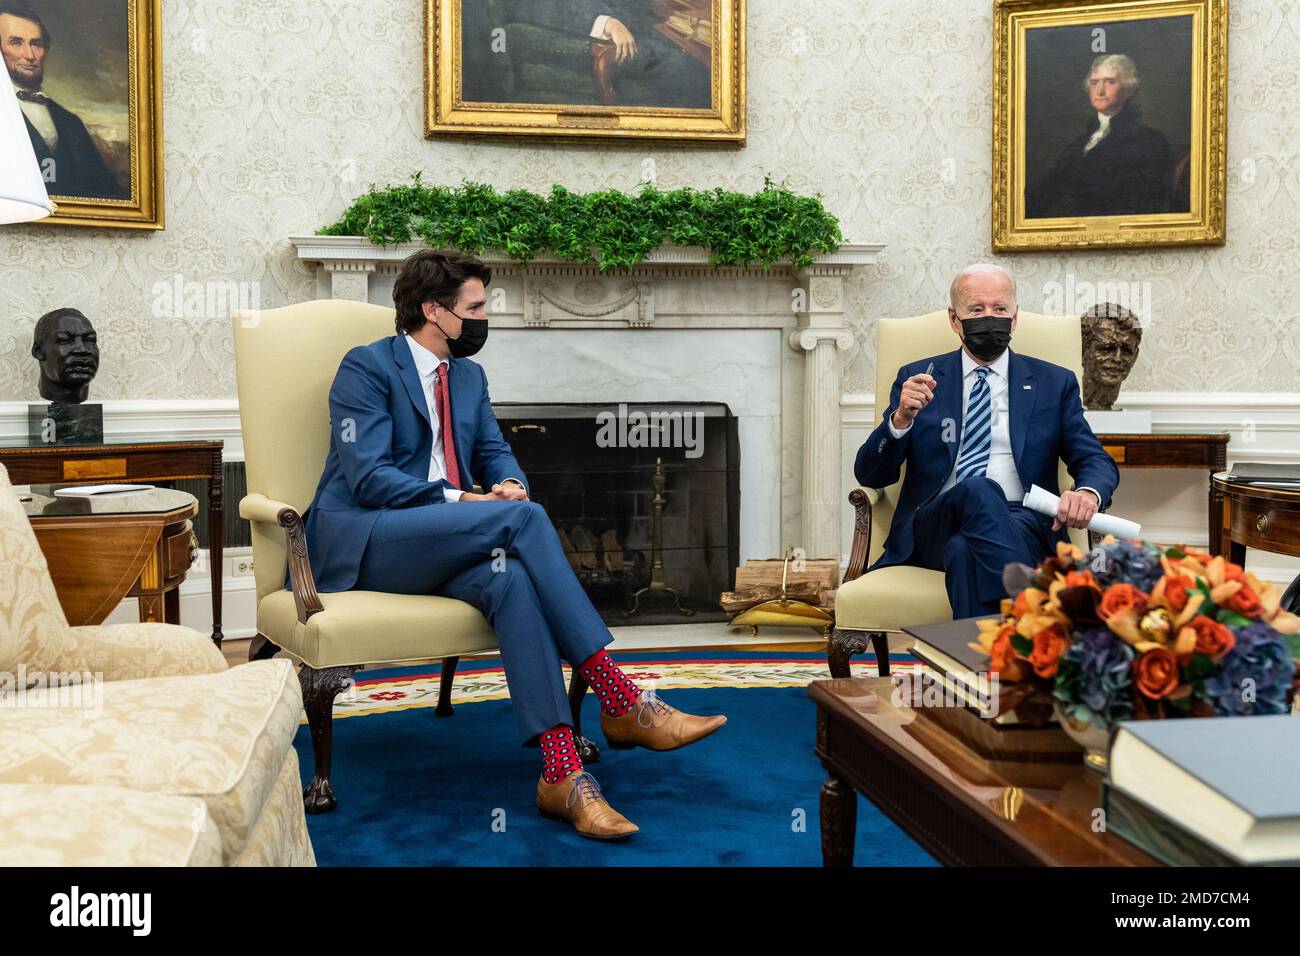 Reportage: Il presidente Joe Biden incontra il primo ministro canadese Justin Trudeau, giovedì 18 novembre 2021, nell'Ufficio ovale. Foto Stock